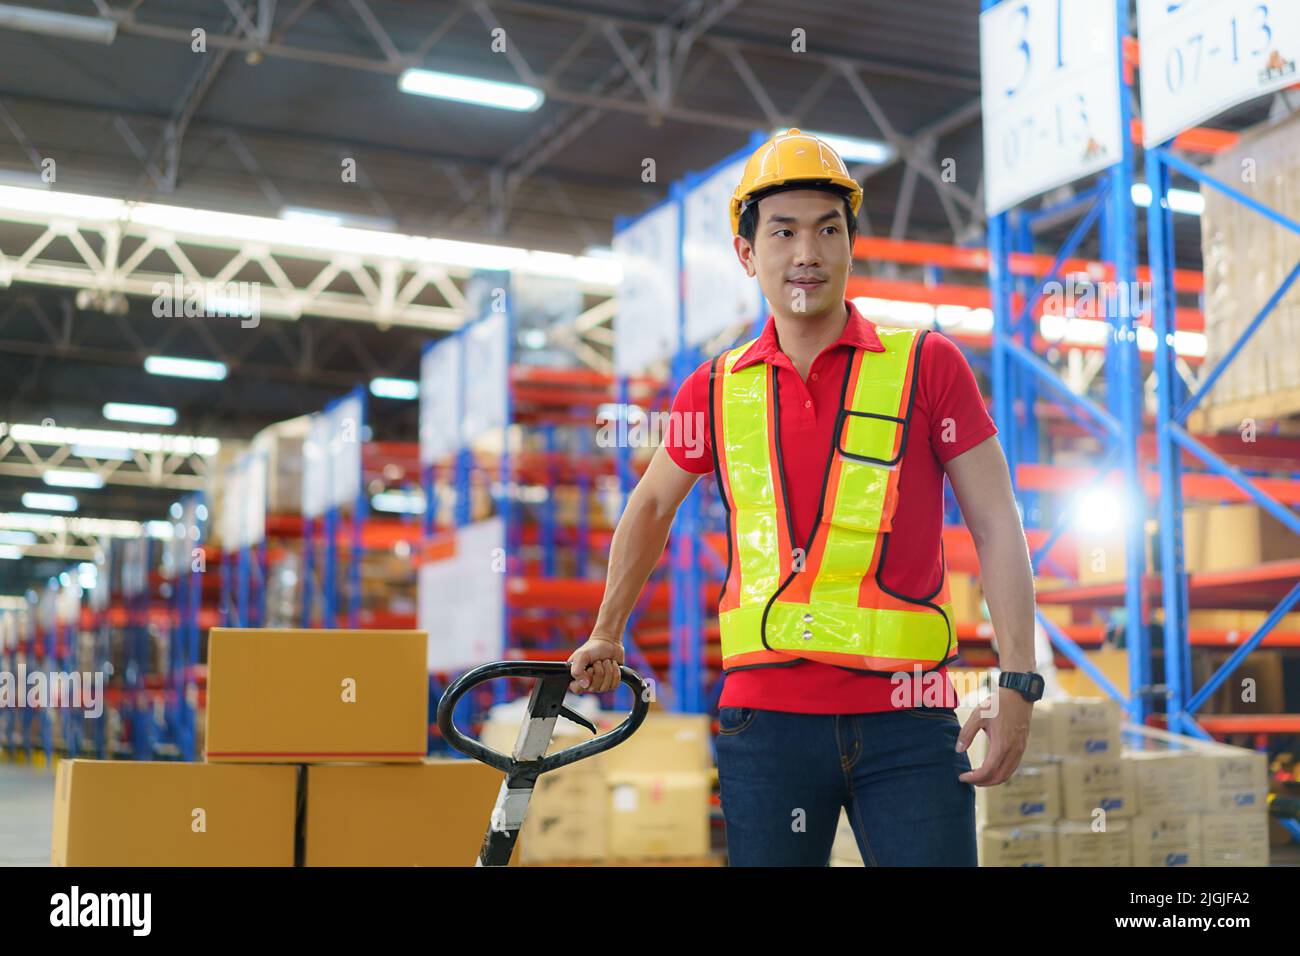 Cajas de envío. Hombre asiático Trabajador de almacén descargando mercancías de envío de palet en un contenedor de camión, carga de la industria de almacén, logística y transporte Foto de stock